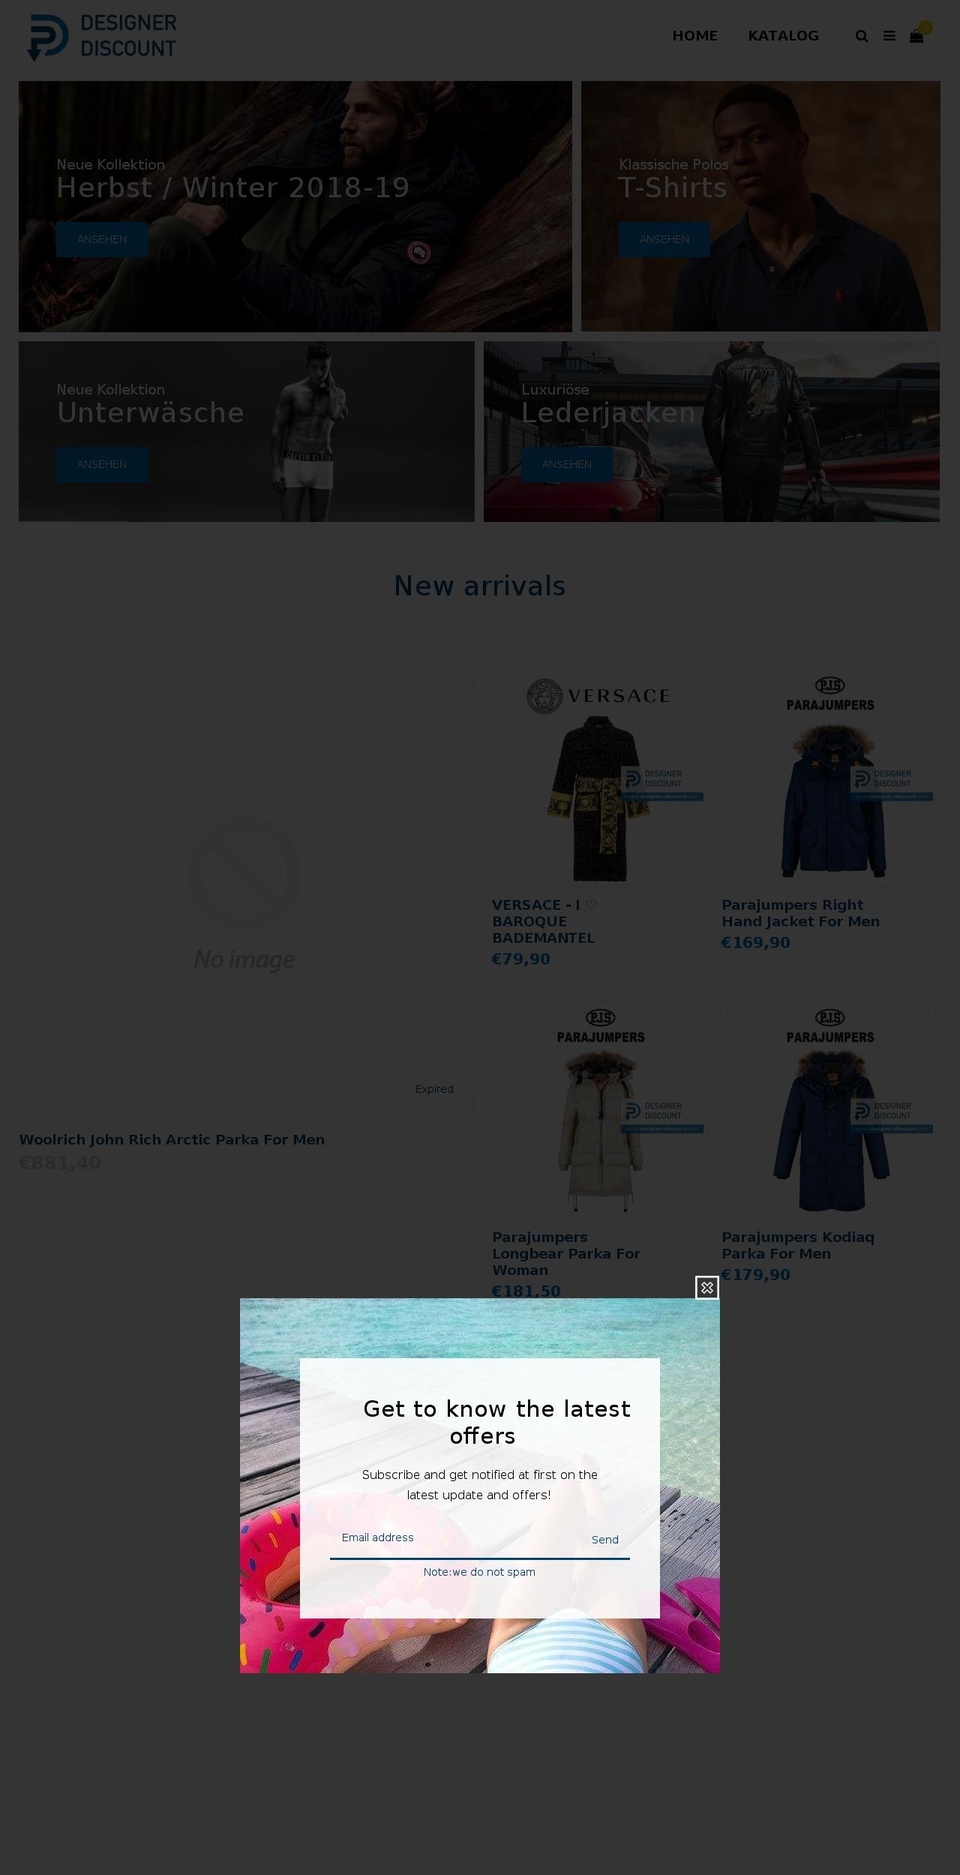 home-v1 Shopify theme site example designer-discount.com